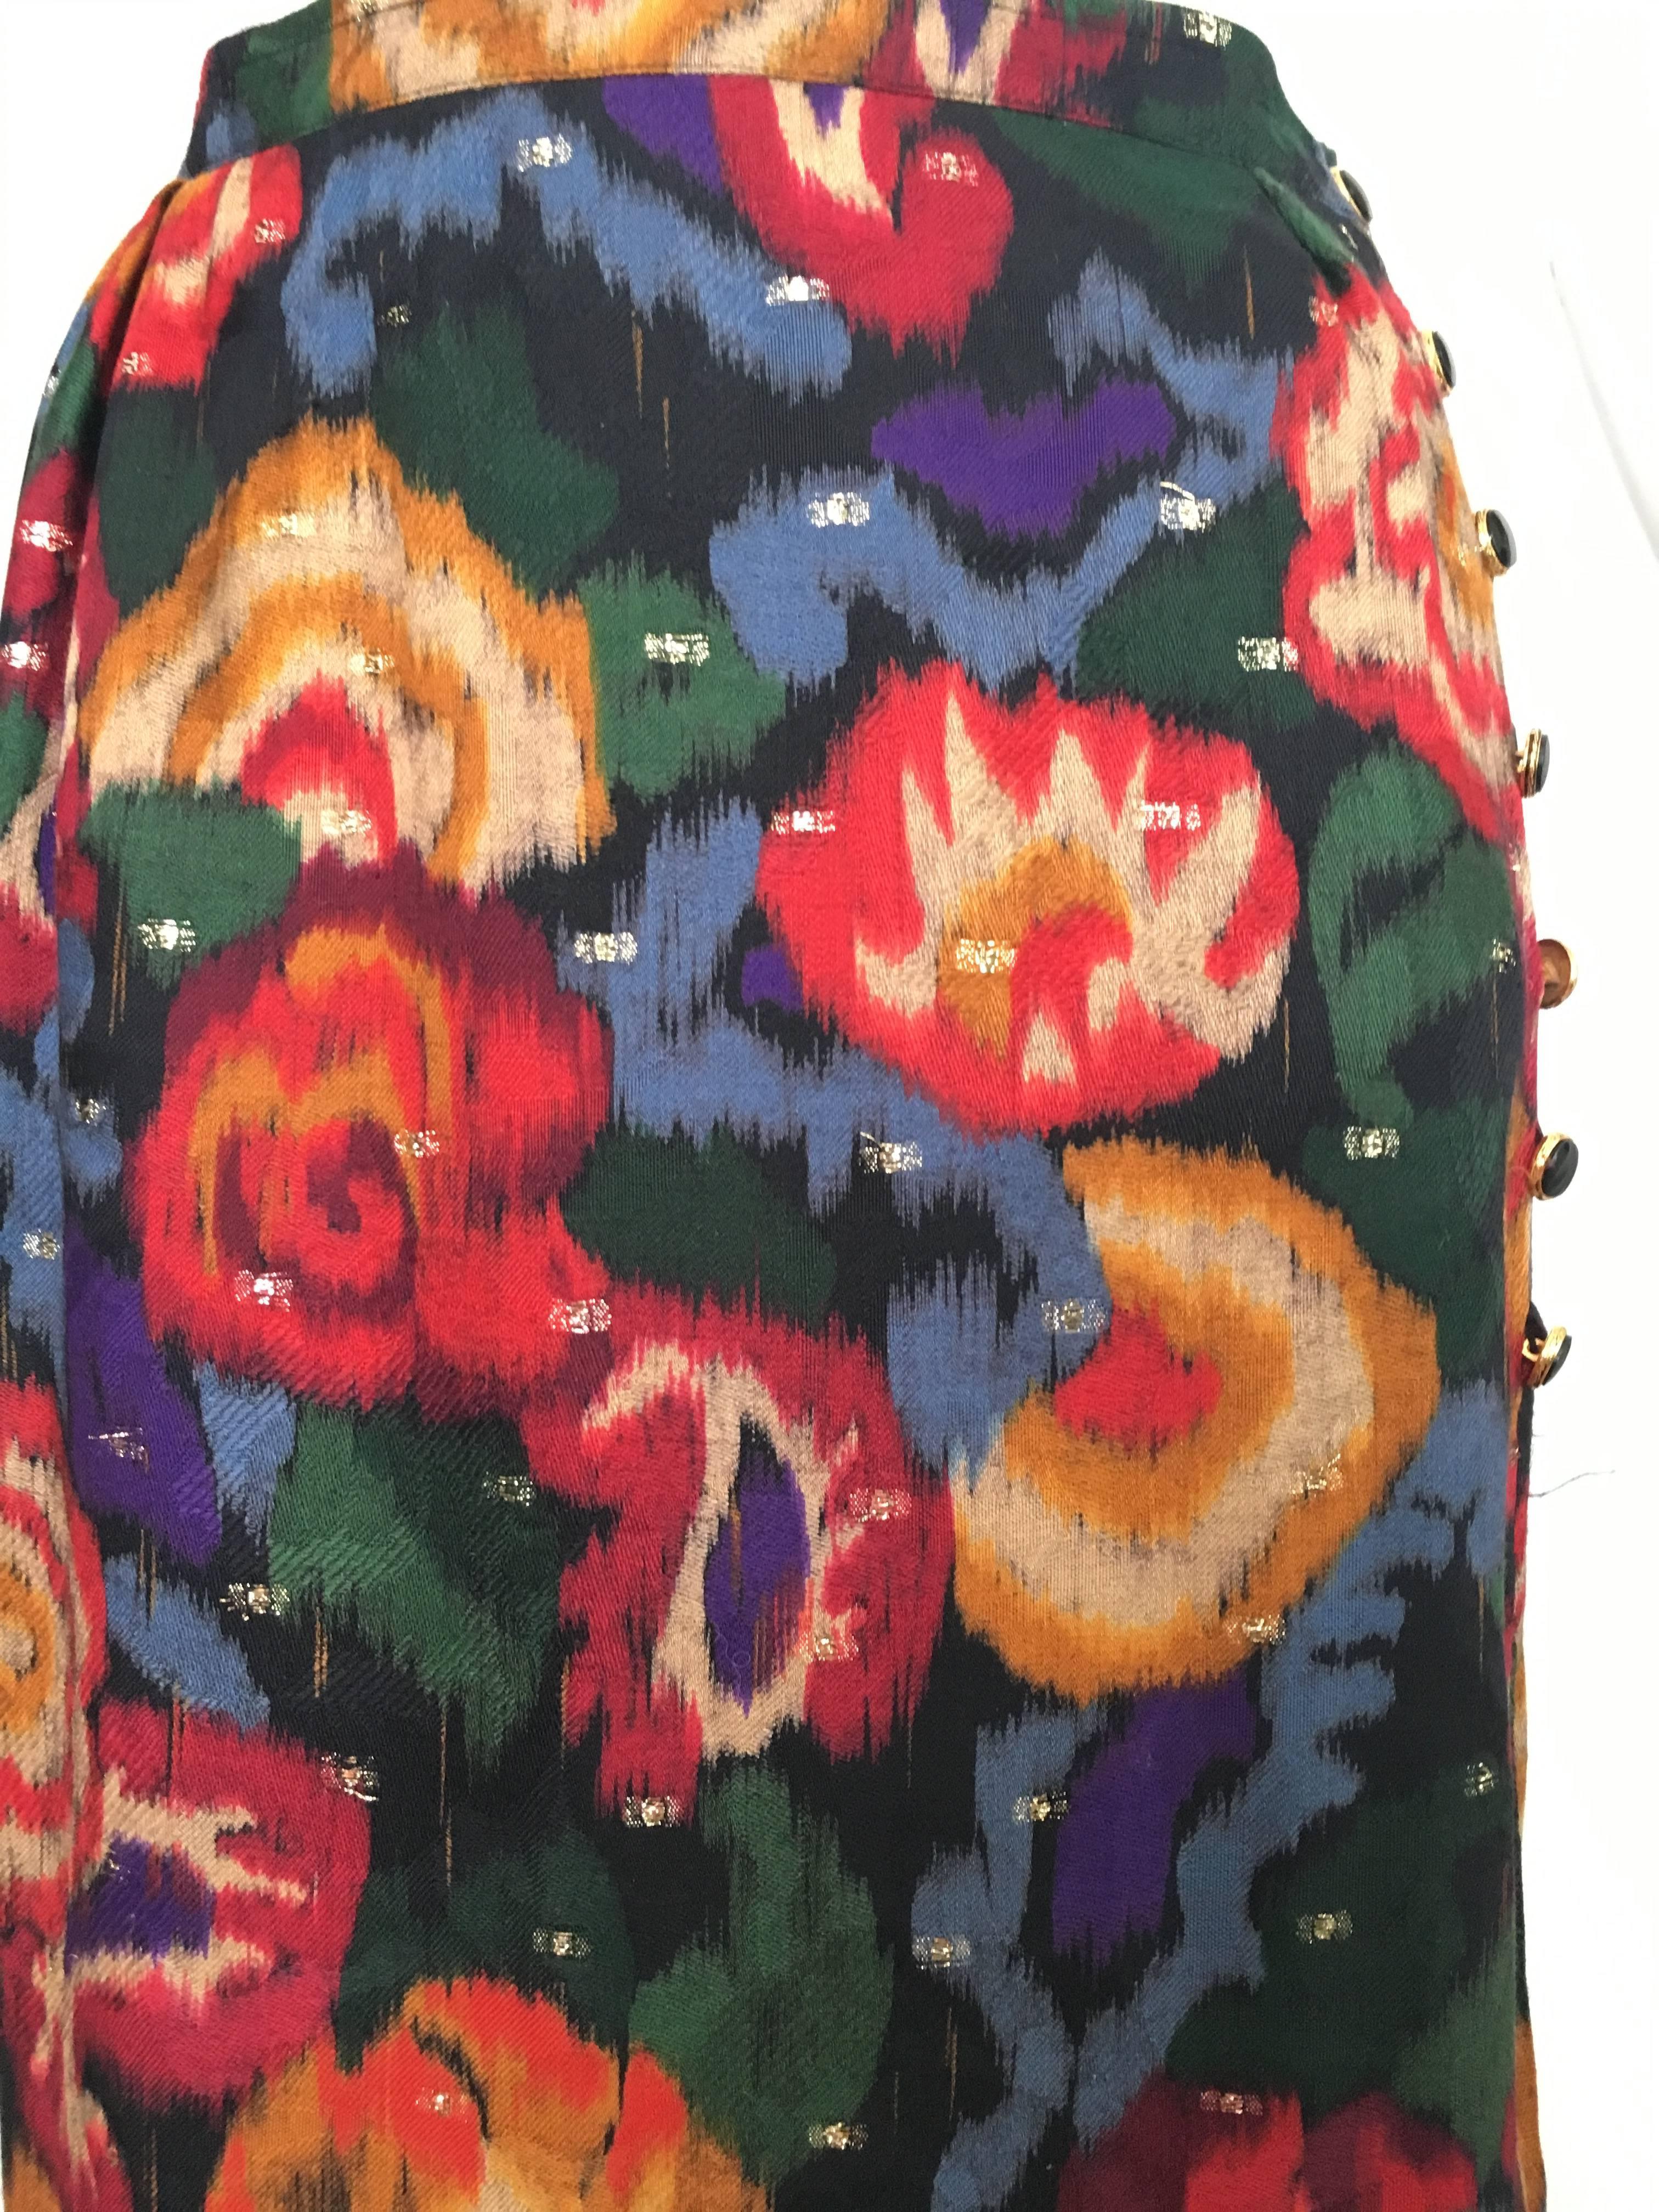 Black Emanuel Ungaro Parallele Paris 1980s Wool / Silk Long Floral Skirt Size 4/6. For Sale